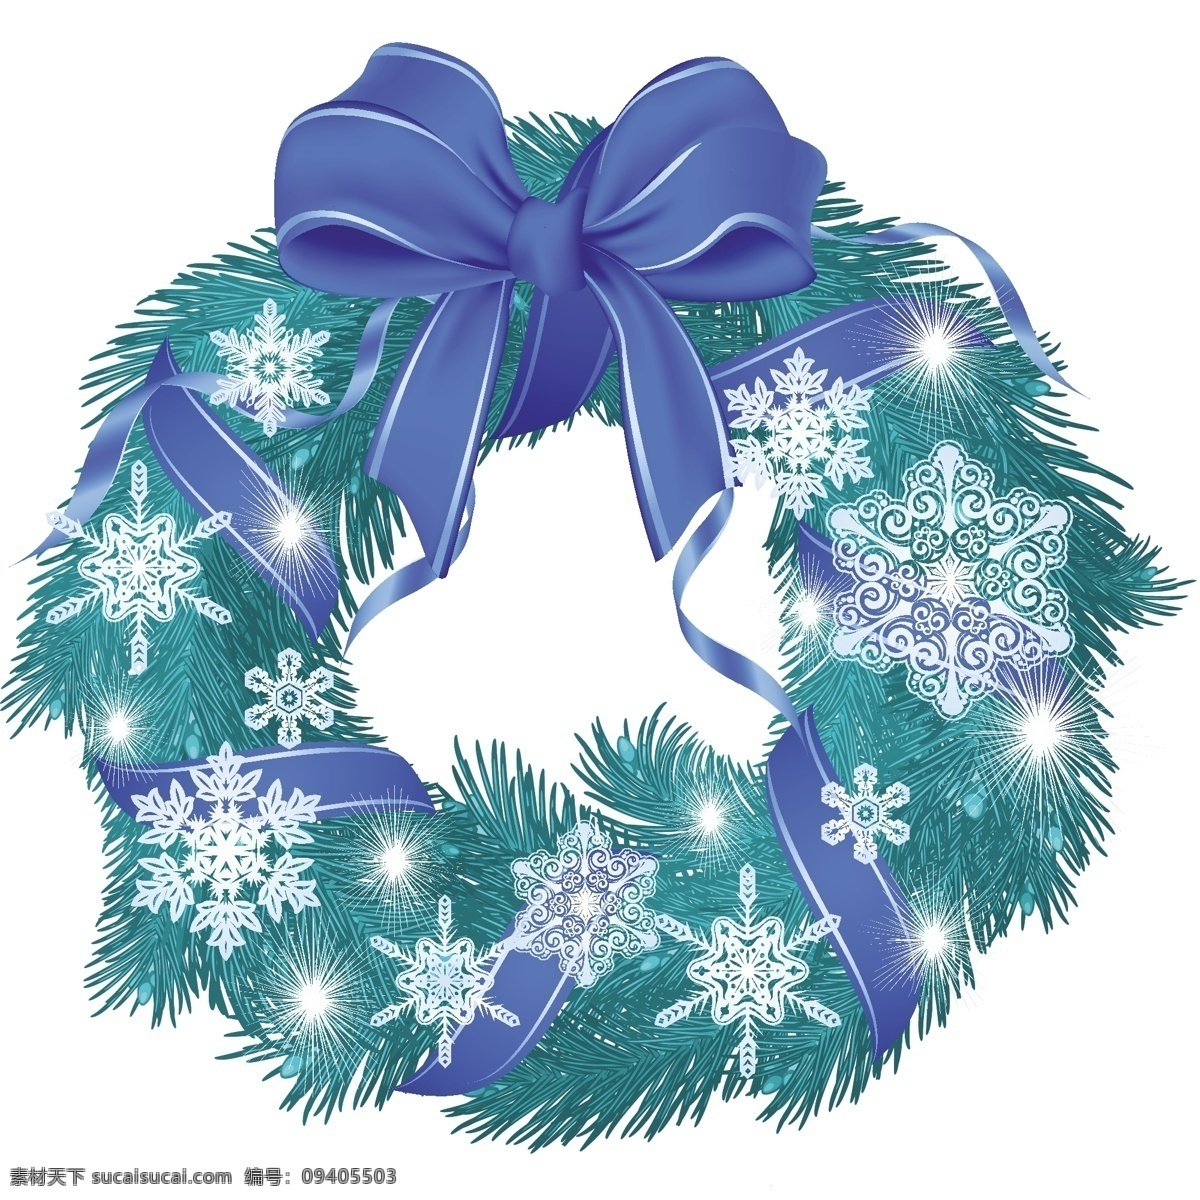 圣诞 花环 装饰 冰冷 蓝色 丝带 蝴蝶结 雪花 矢量 矢量图 日常生活